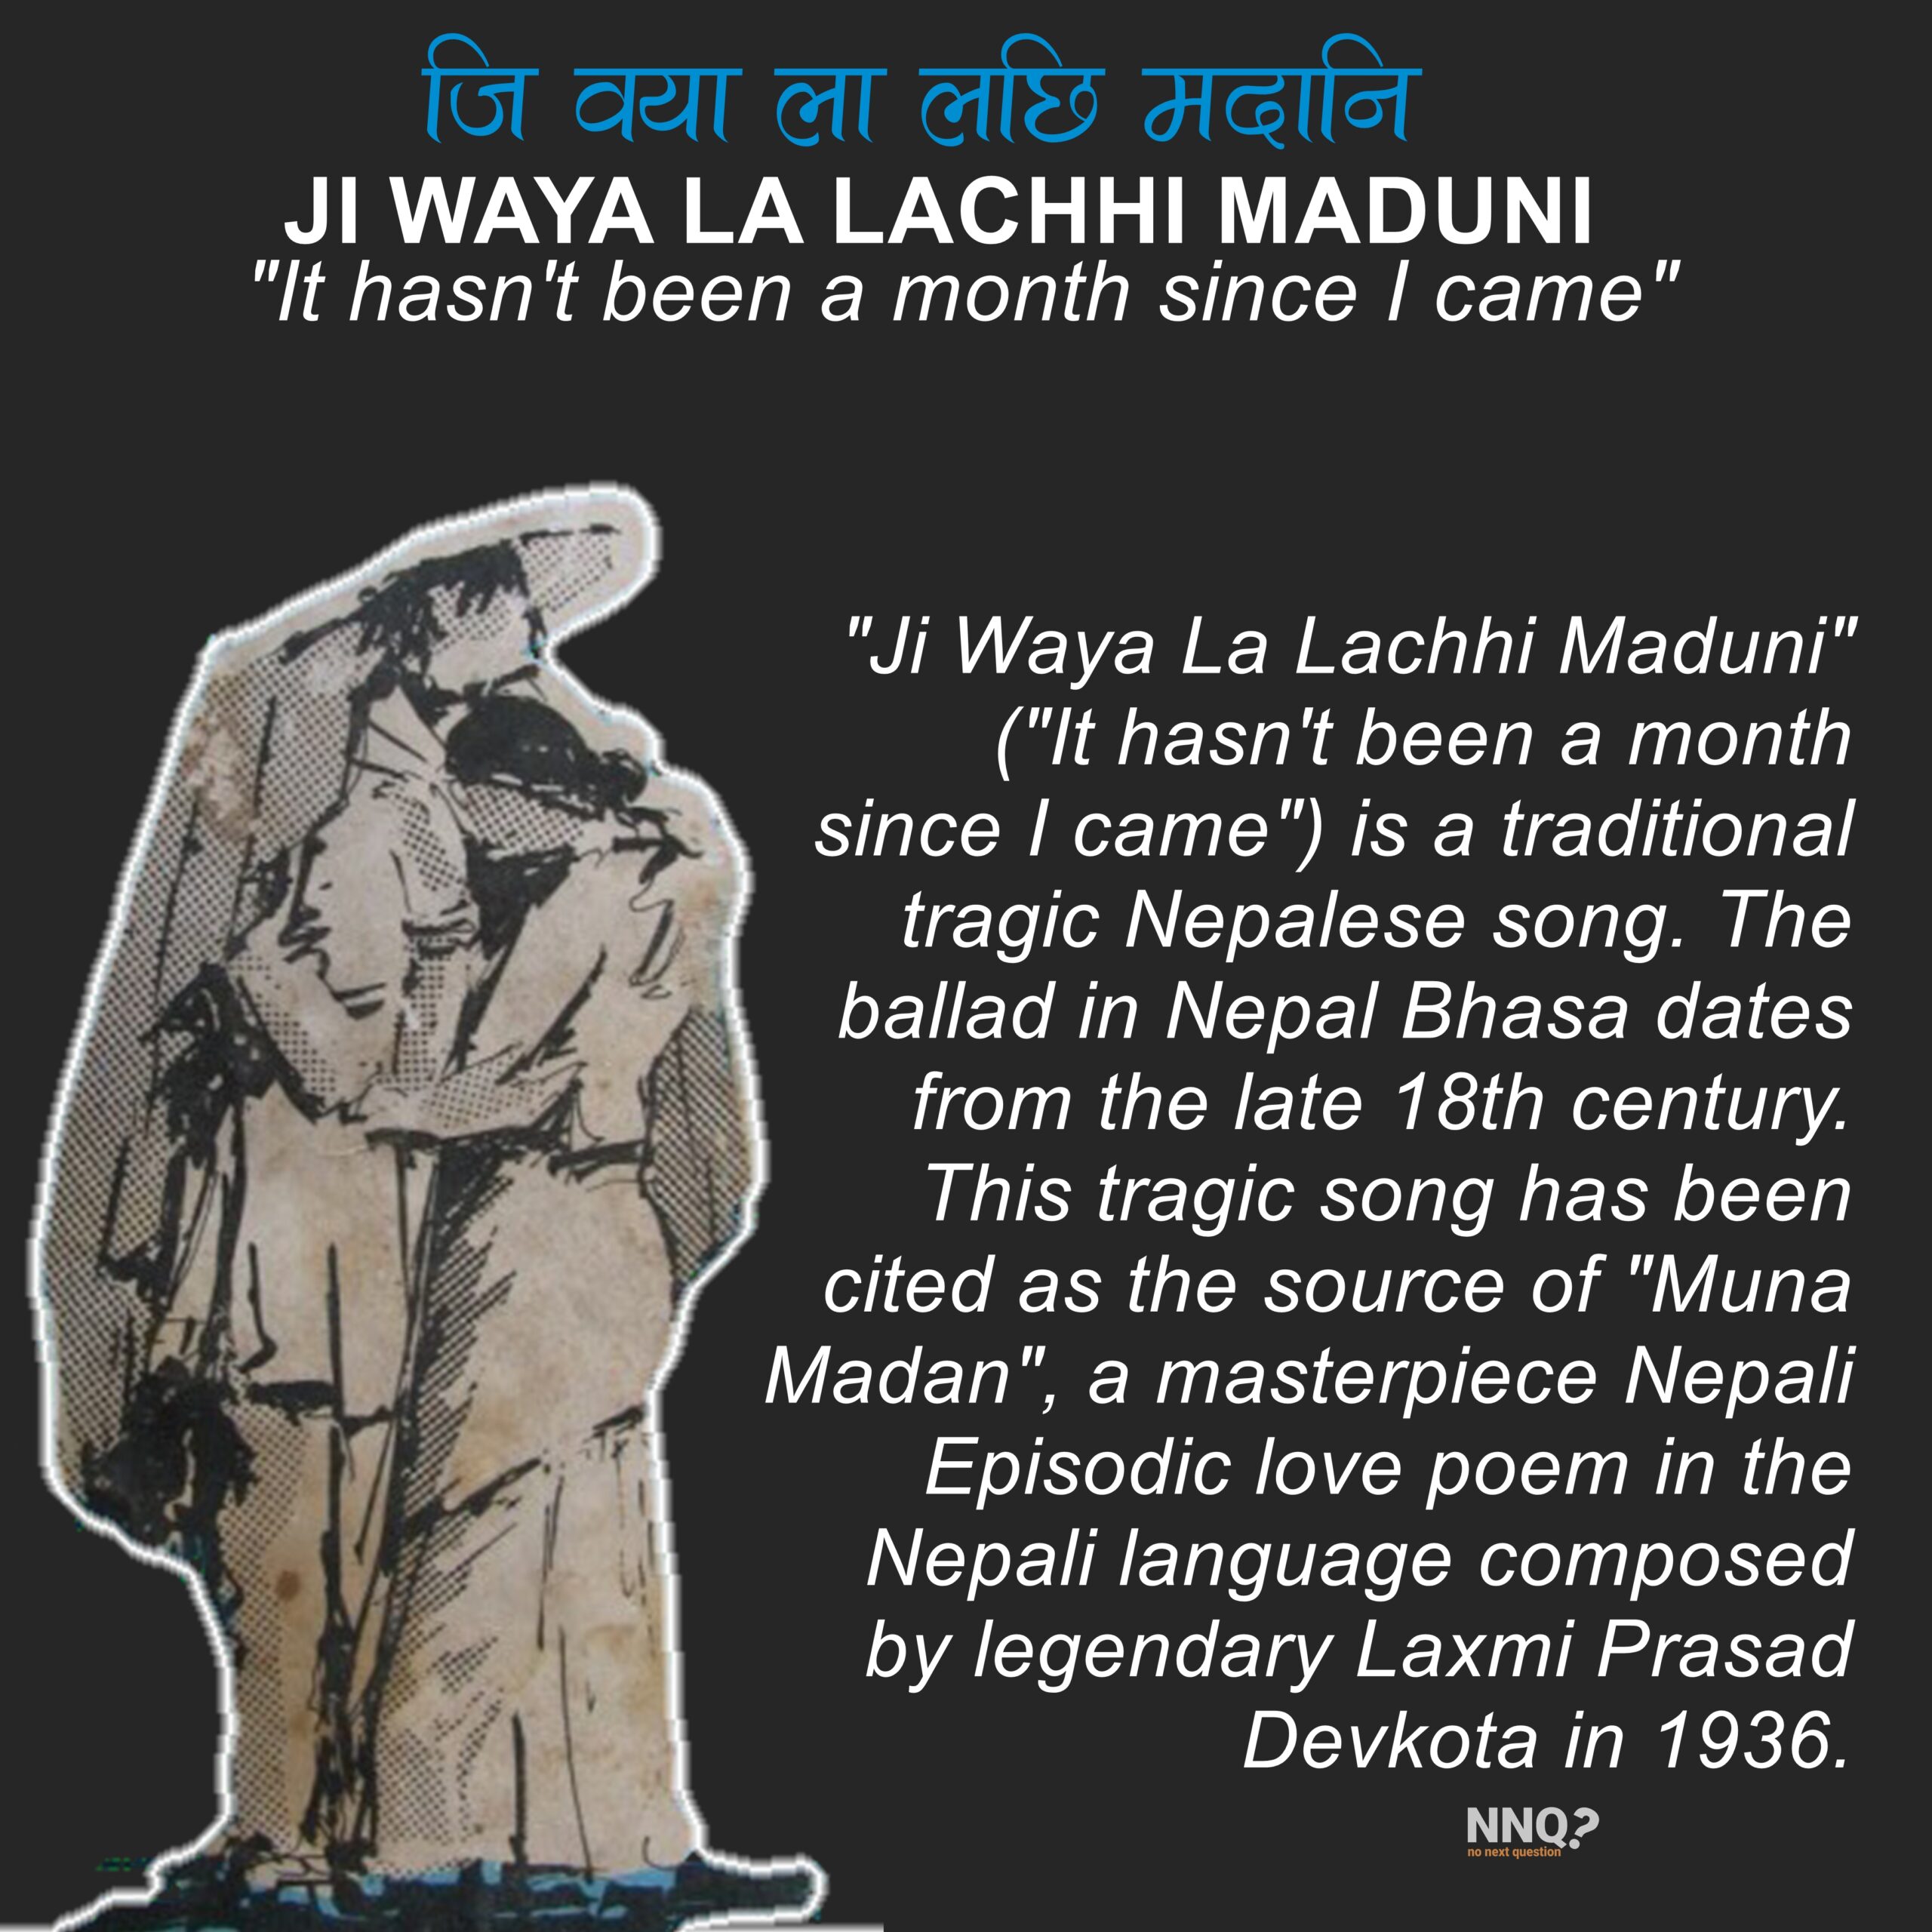 Ji Wayā Lā Lachhi Maduni (It hasn’t been a month since I came)